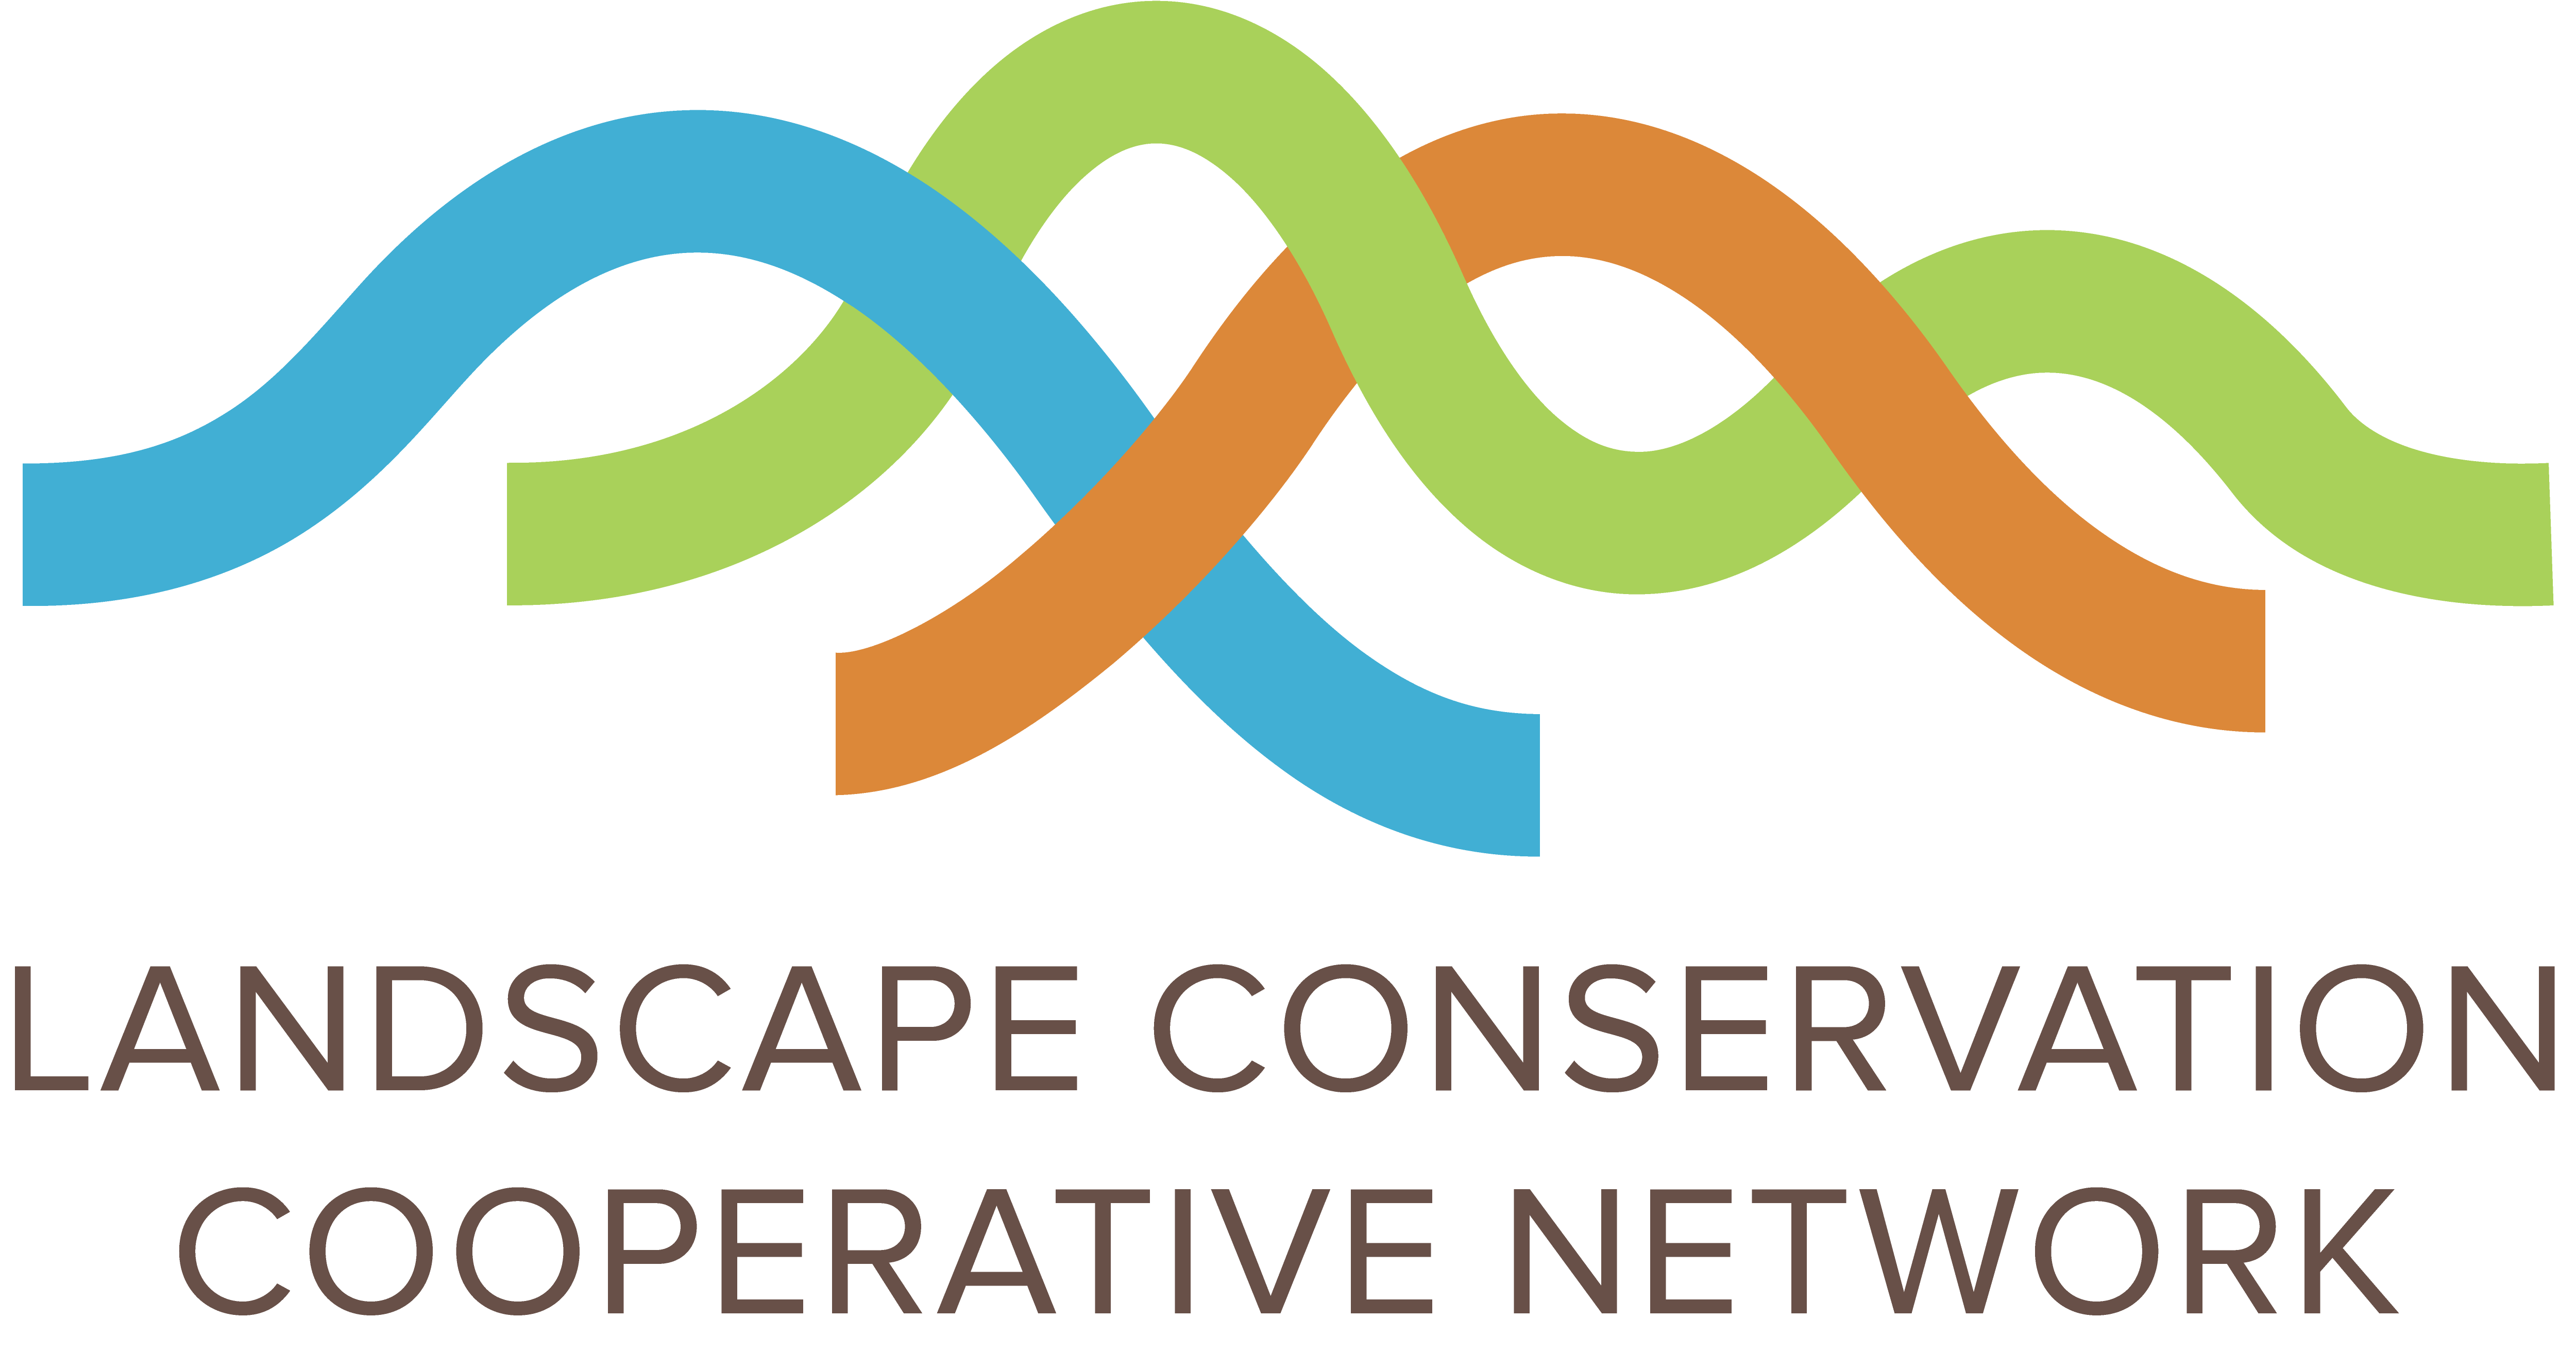 LCC Logo - Landscape Conservation Cooperative Network Logo. Landscape